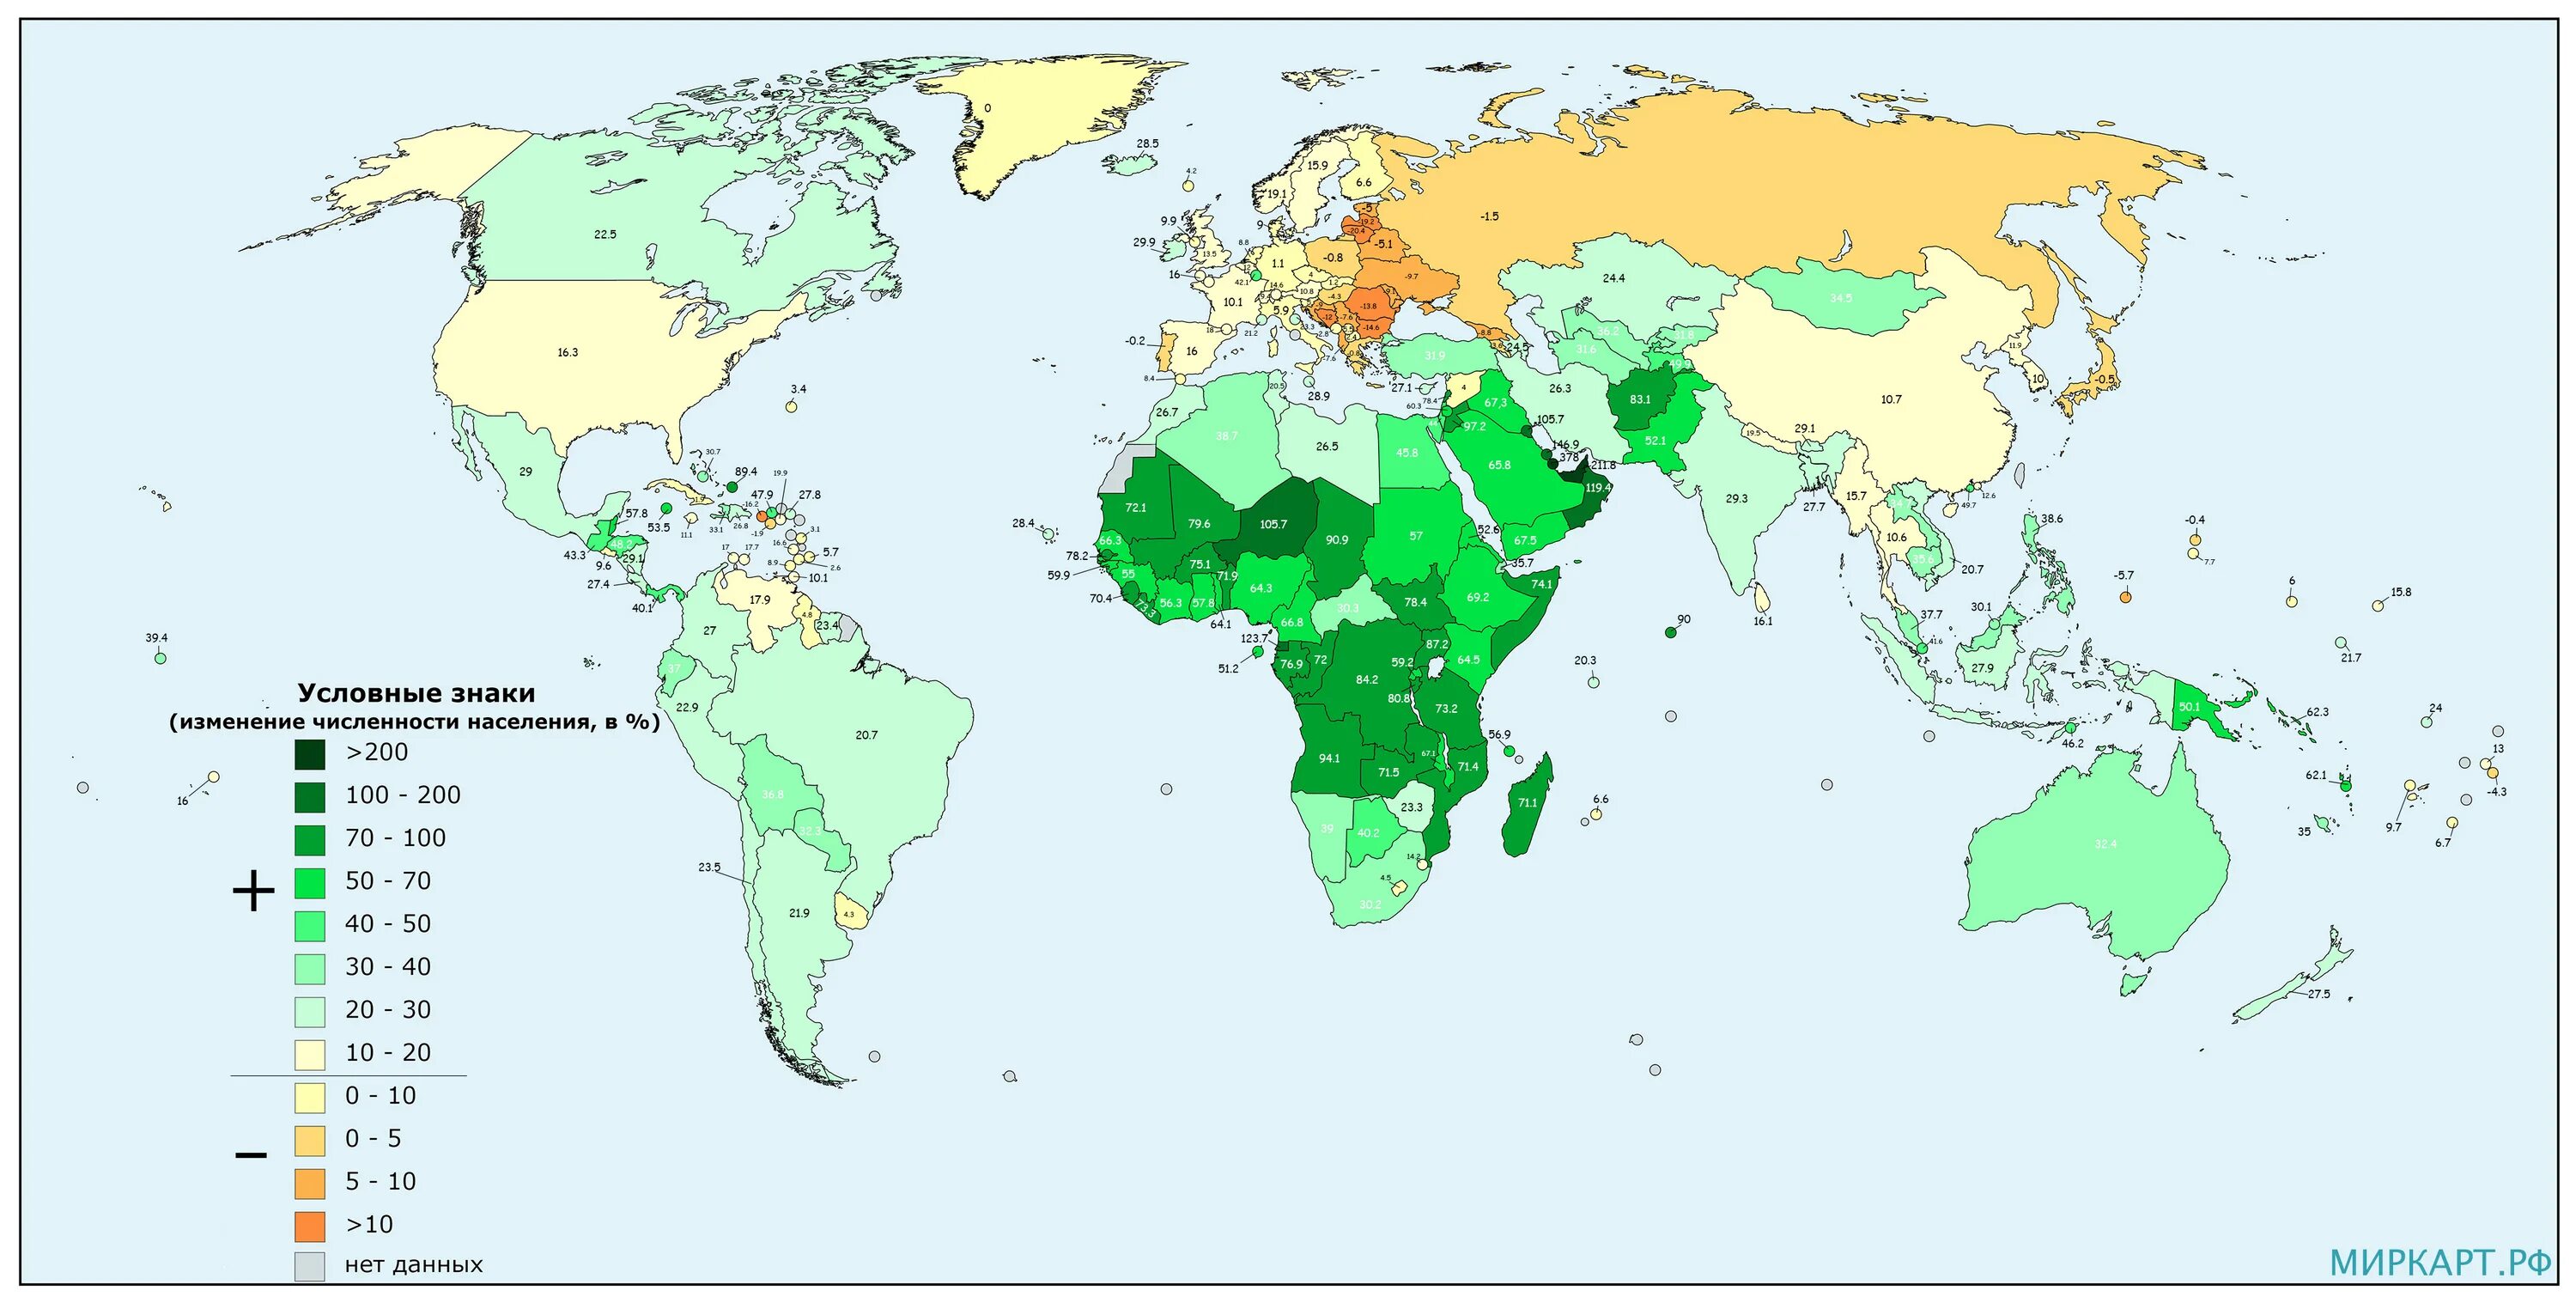 Численность населения стран 2000 год